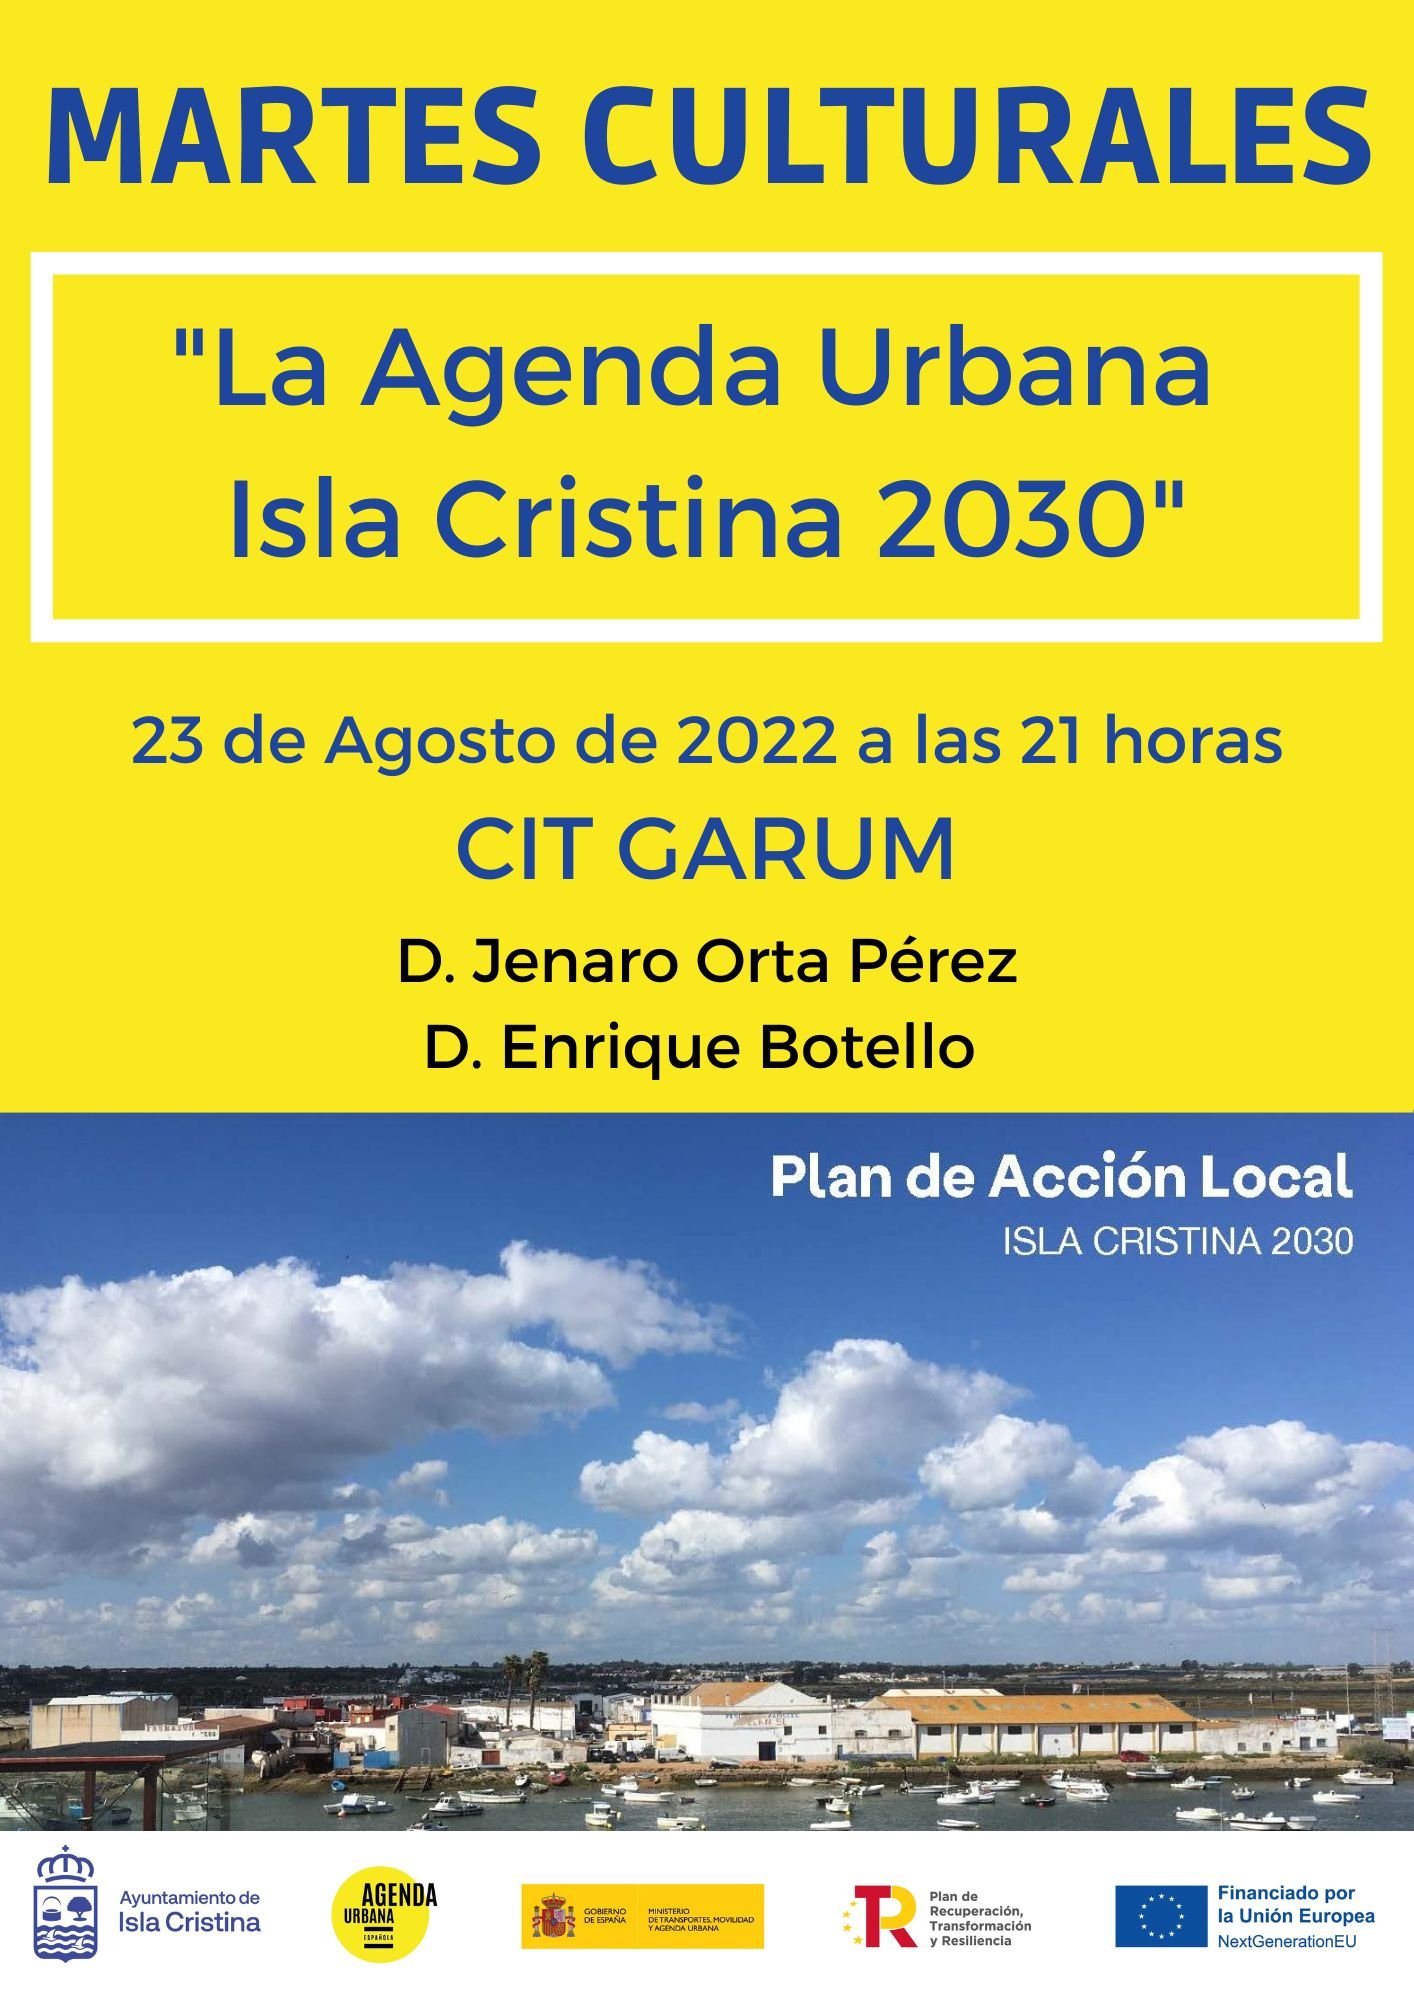 Ciclo Martes Culturales “Agenda Urbana Isla Cristina 2030”